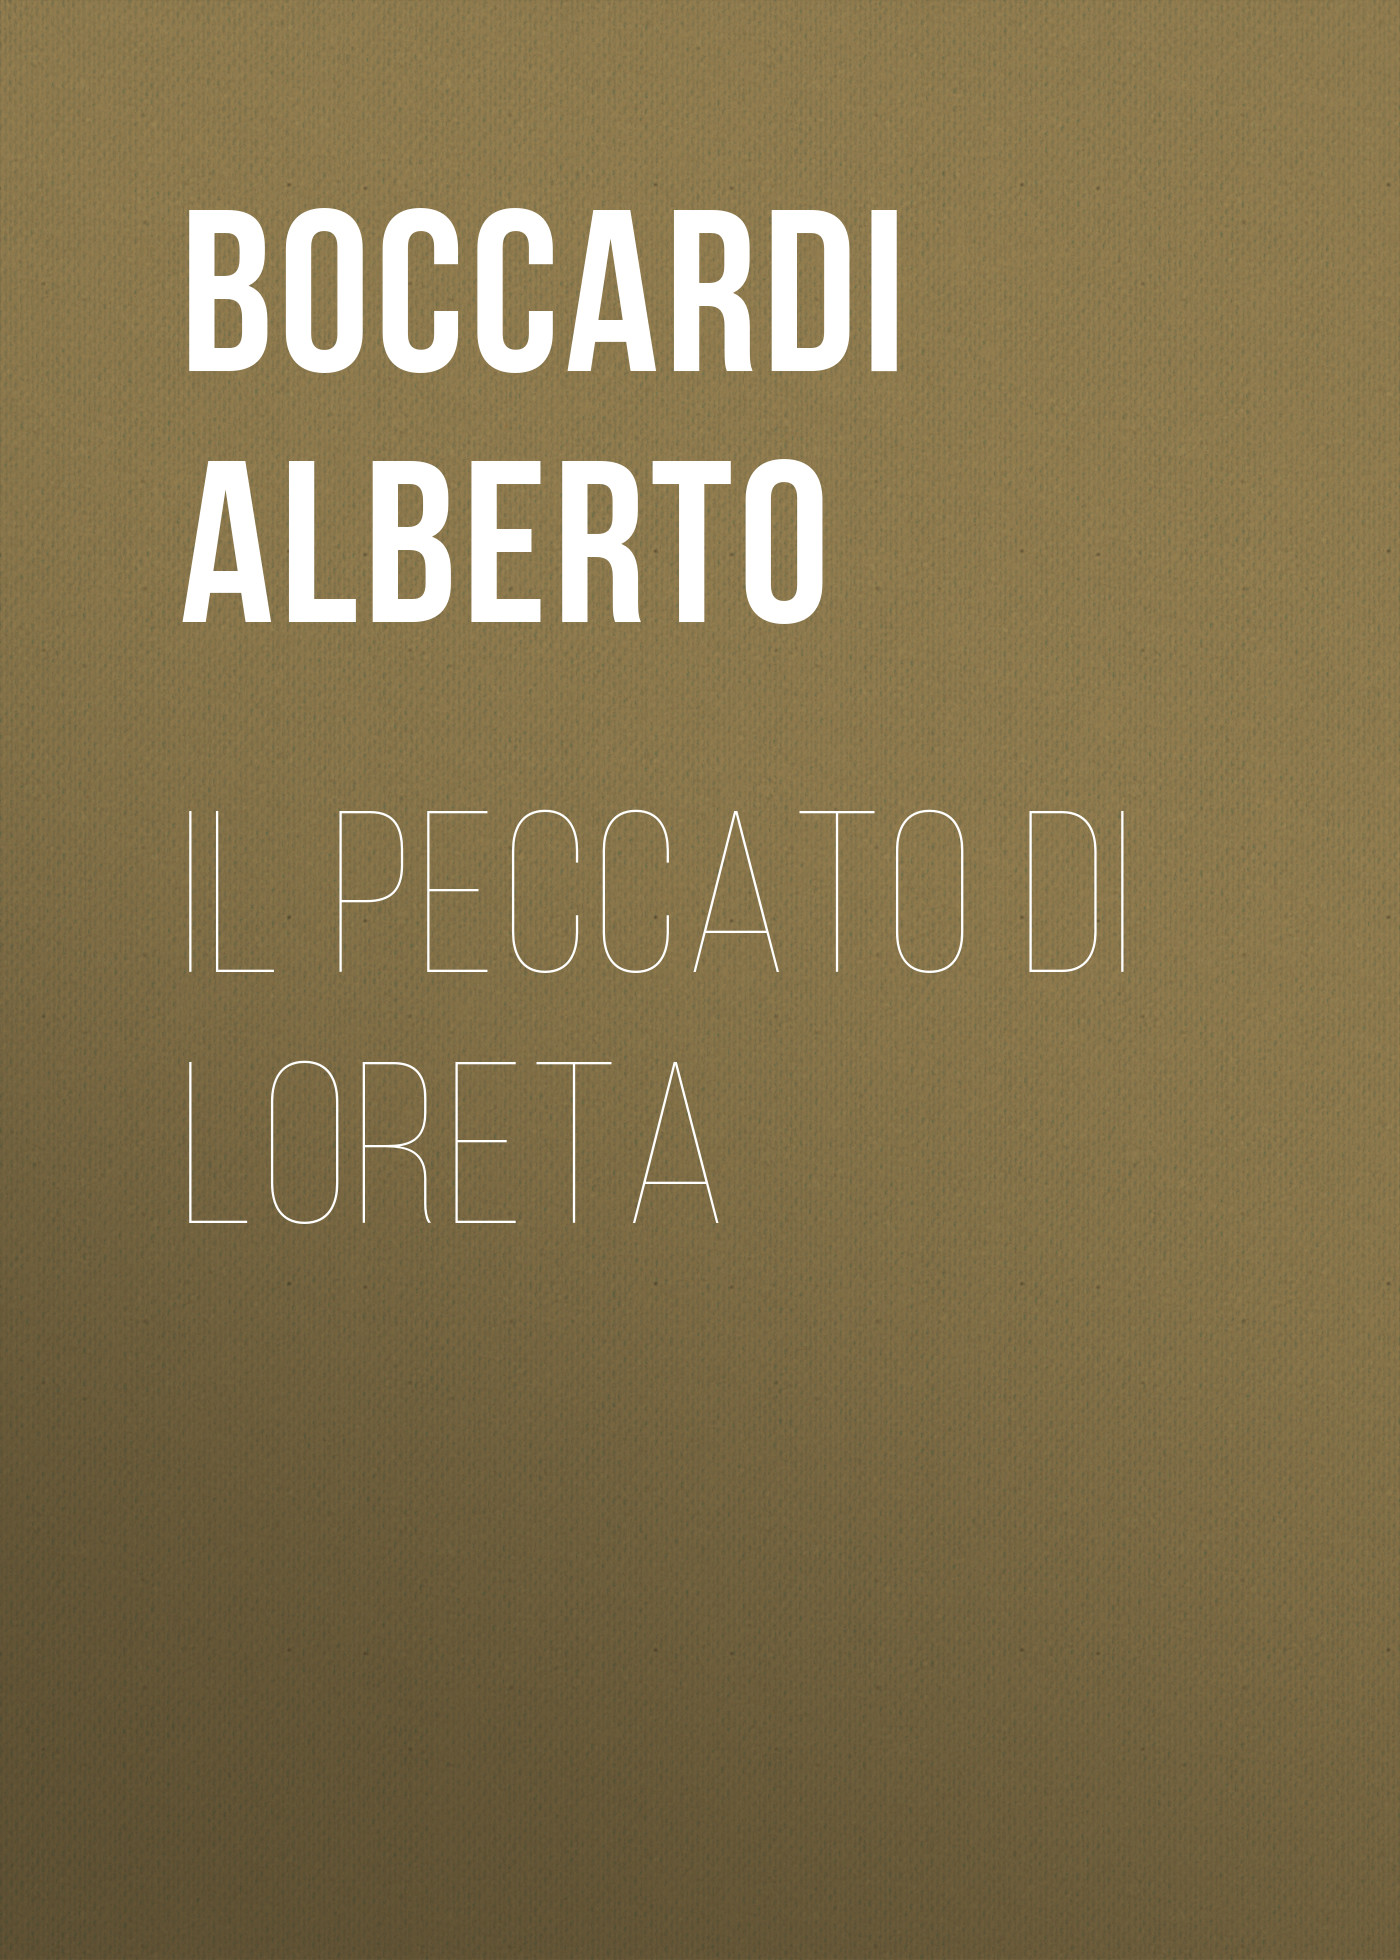 Книга Il peccato di Loreta из серии , созданная Alberto Boccardi, может относится к жанру Зарубежная старинная литература, Зарубежная классика. Стоимость электронной книги Il peccato di Loreta с идентификатором 24179076 составляет 0.90 руб.